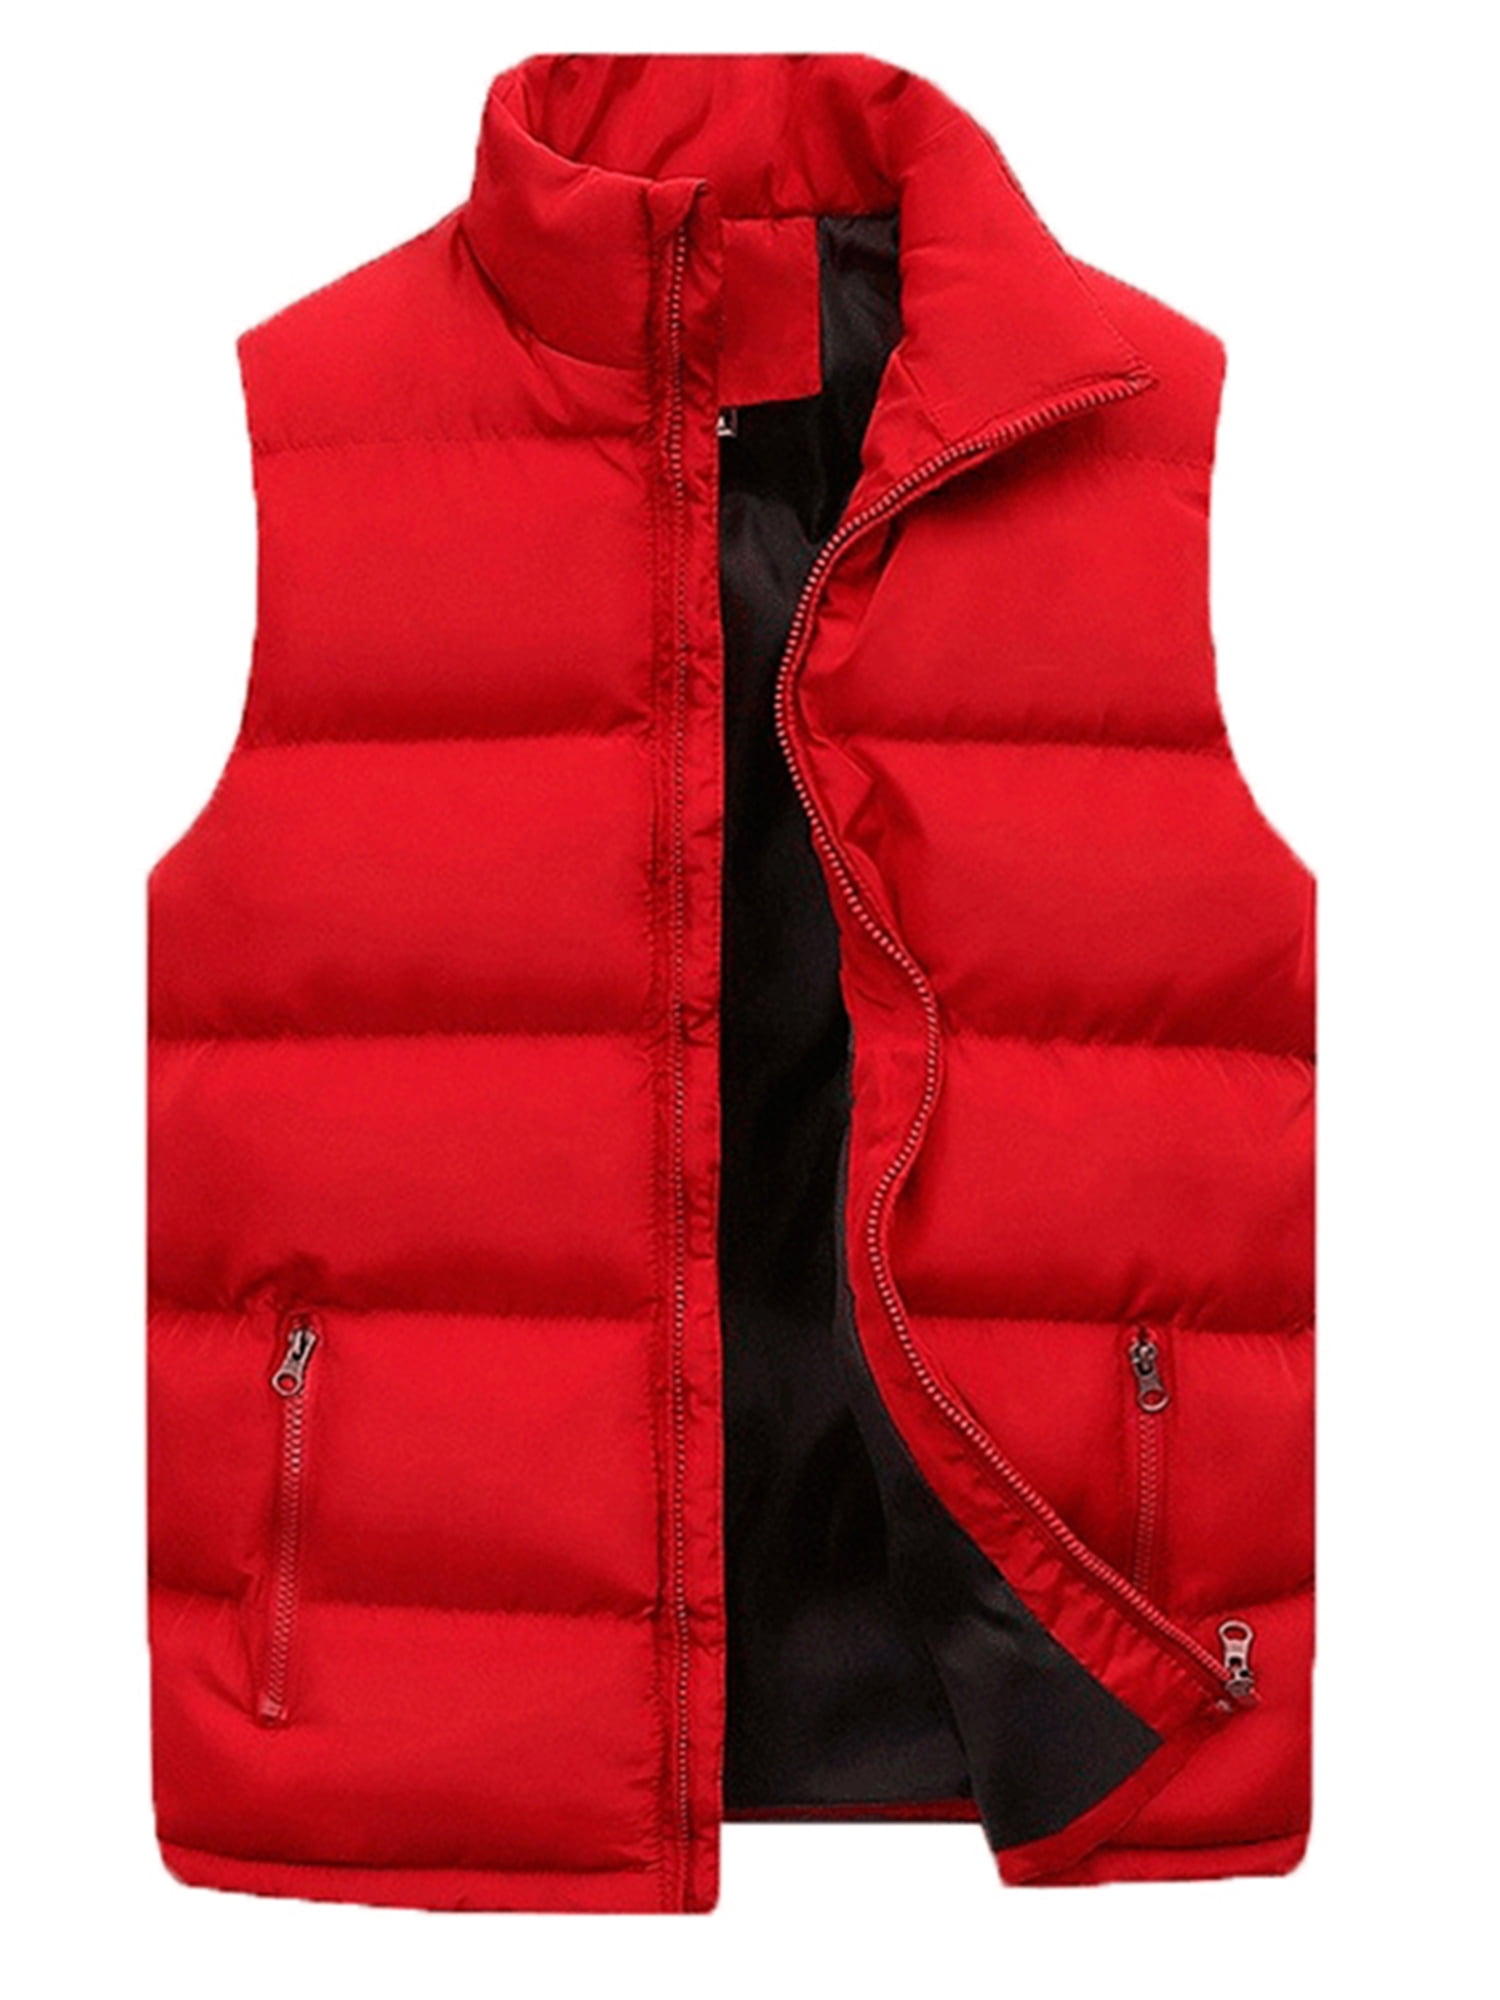 Haite Outdoor Padded Puffer Vest for Men Sleeveless Jacket Outwear Red L